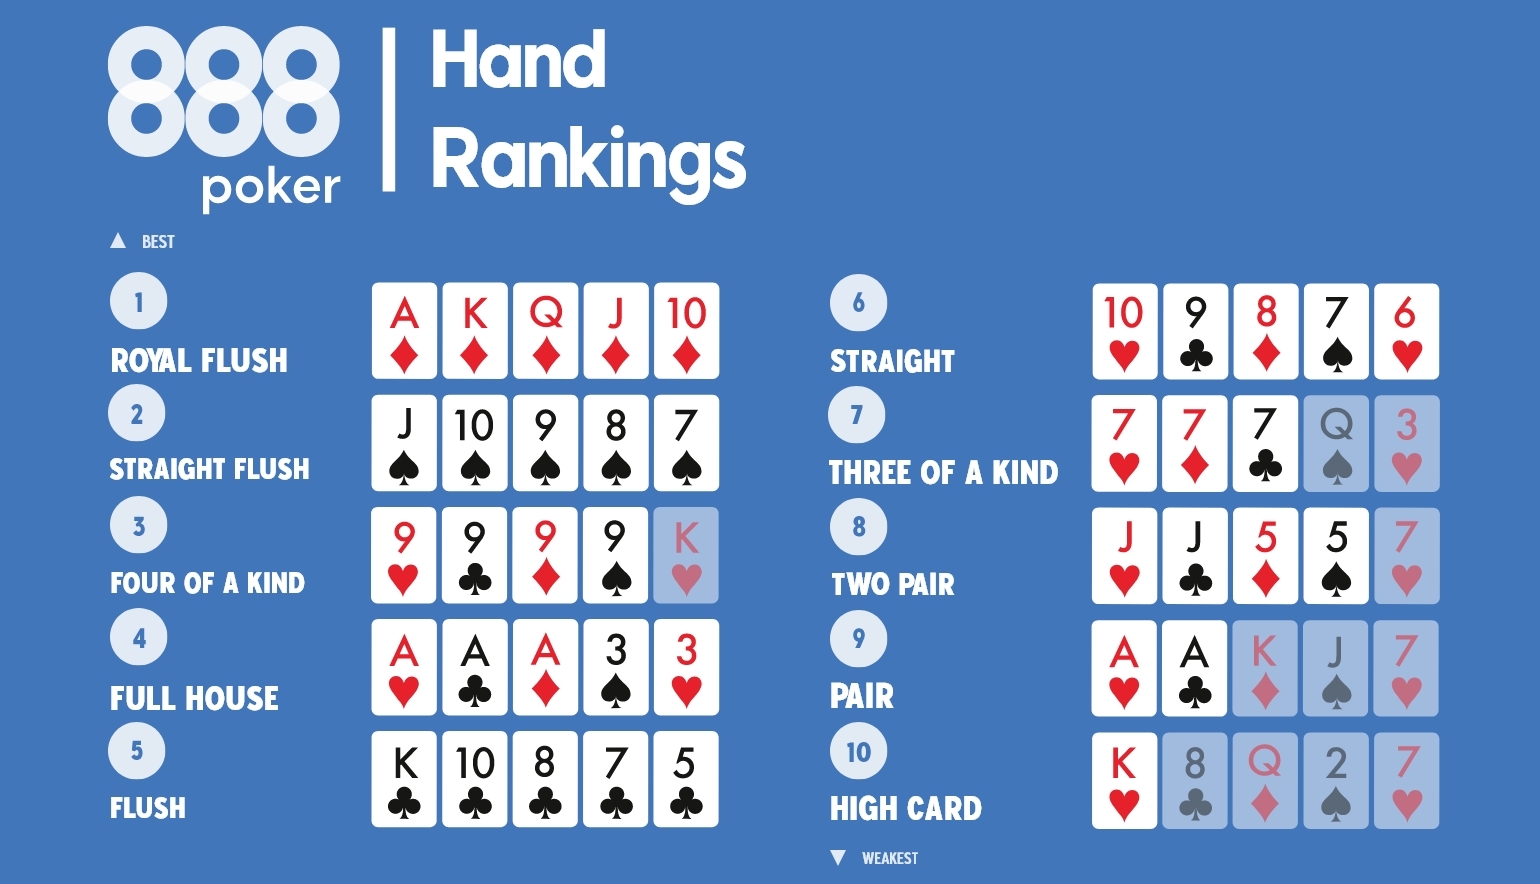 https://www.888poker.com/content/dam/holdings888/888poker/com/en/poker-games/poker-hands-ranking/poker%20hands%20renking.jpg